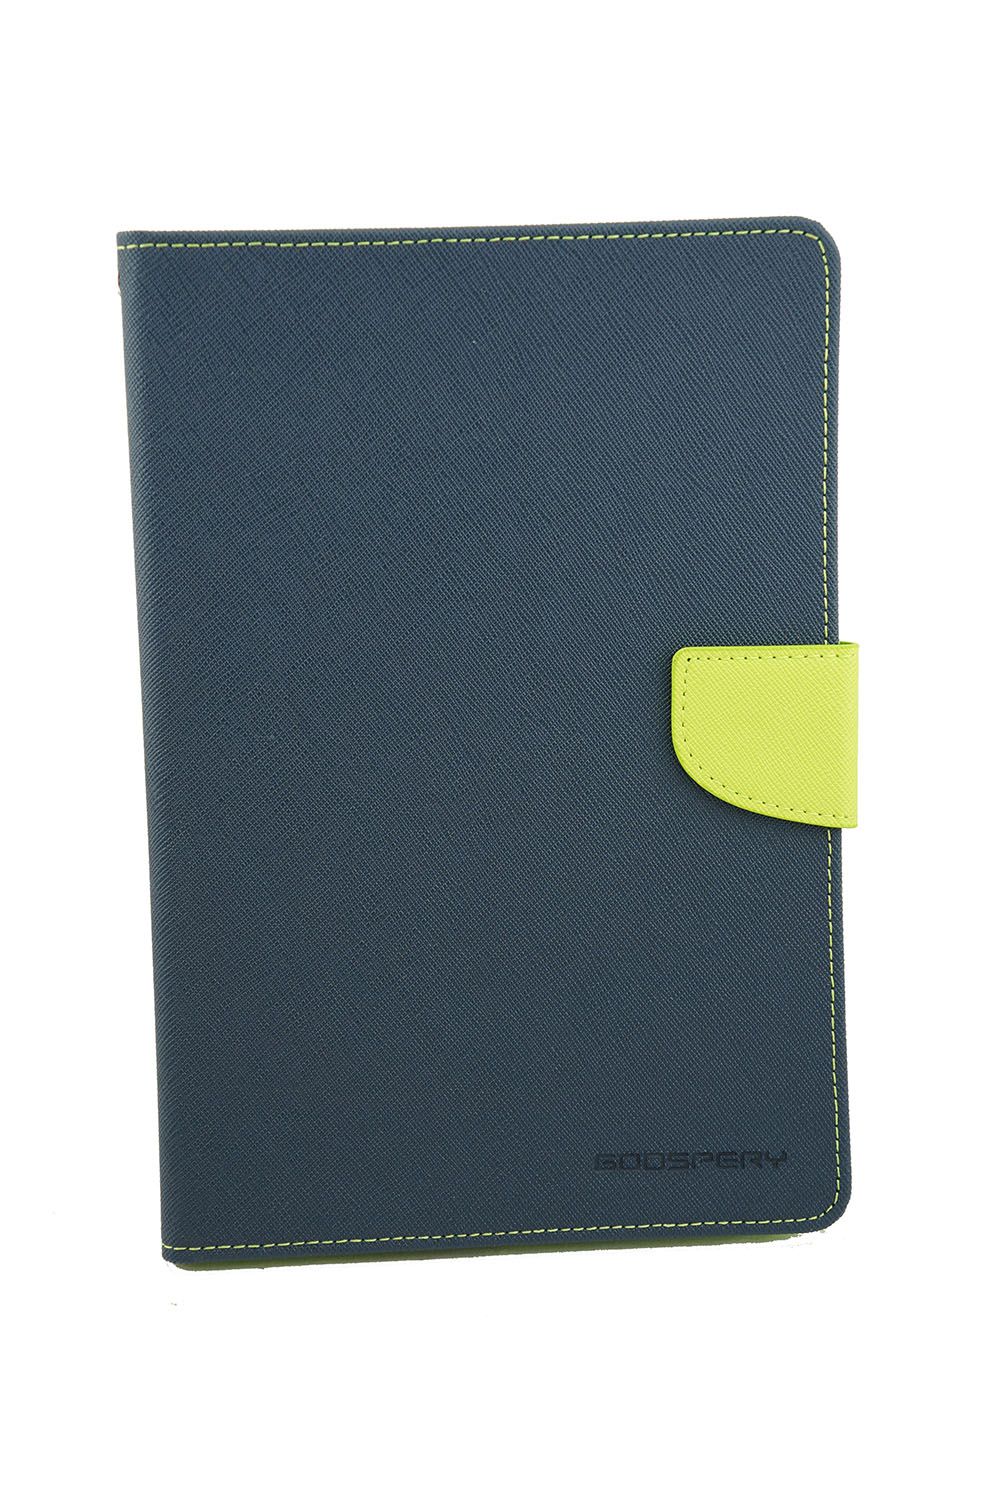 iPad Pro 9.7 Goospery Mercury Fancy Diary - Navy/Lime